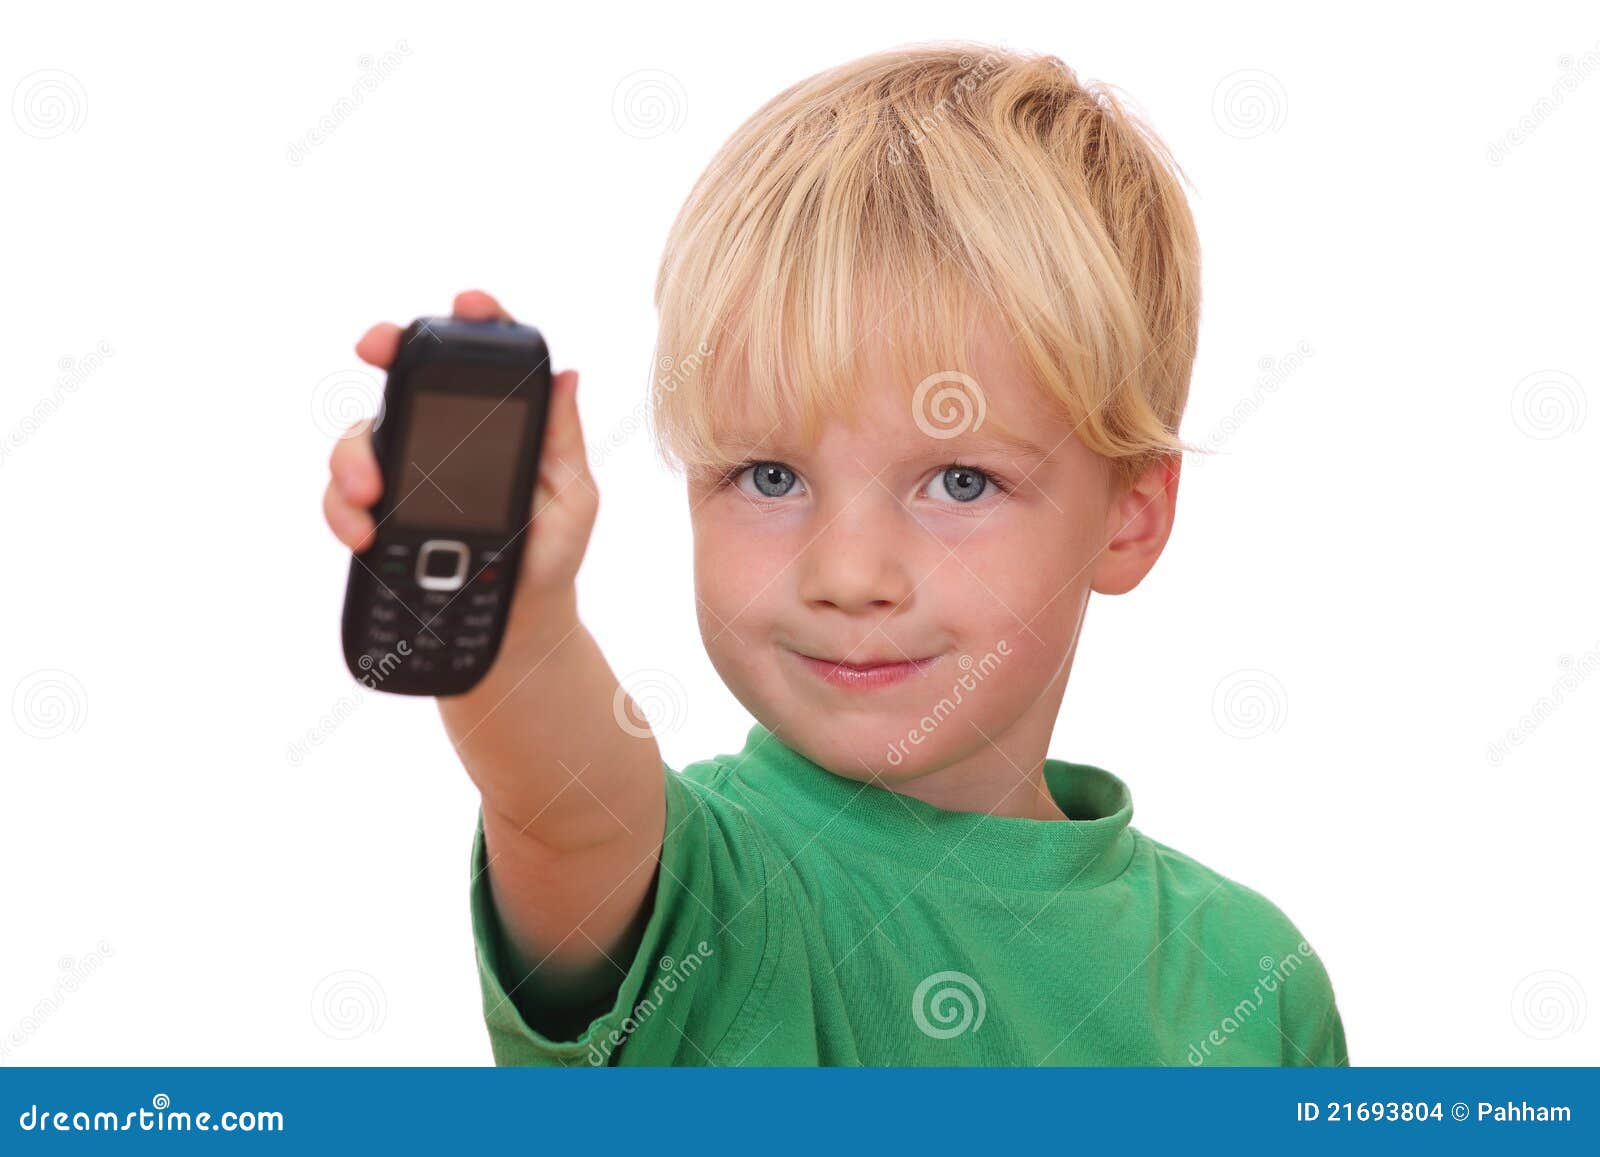 Включи телефон мальчик. Мальчик с телефоном. Ребенок с телефоном в руках. Мальчик с телефоном фот. Мальчик с телефоном в руке.